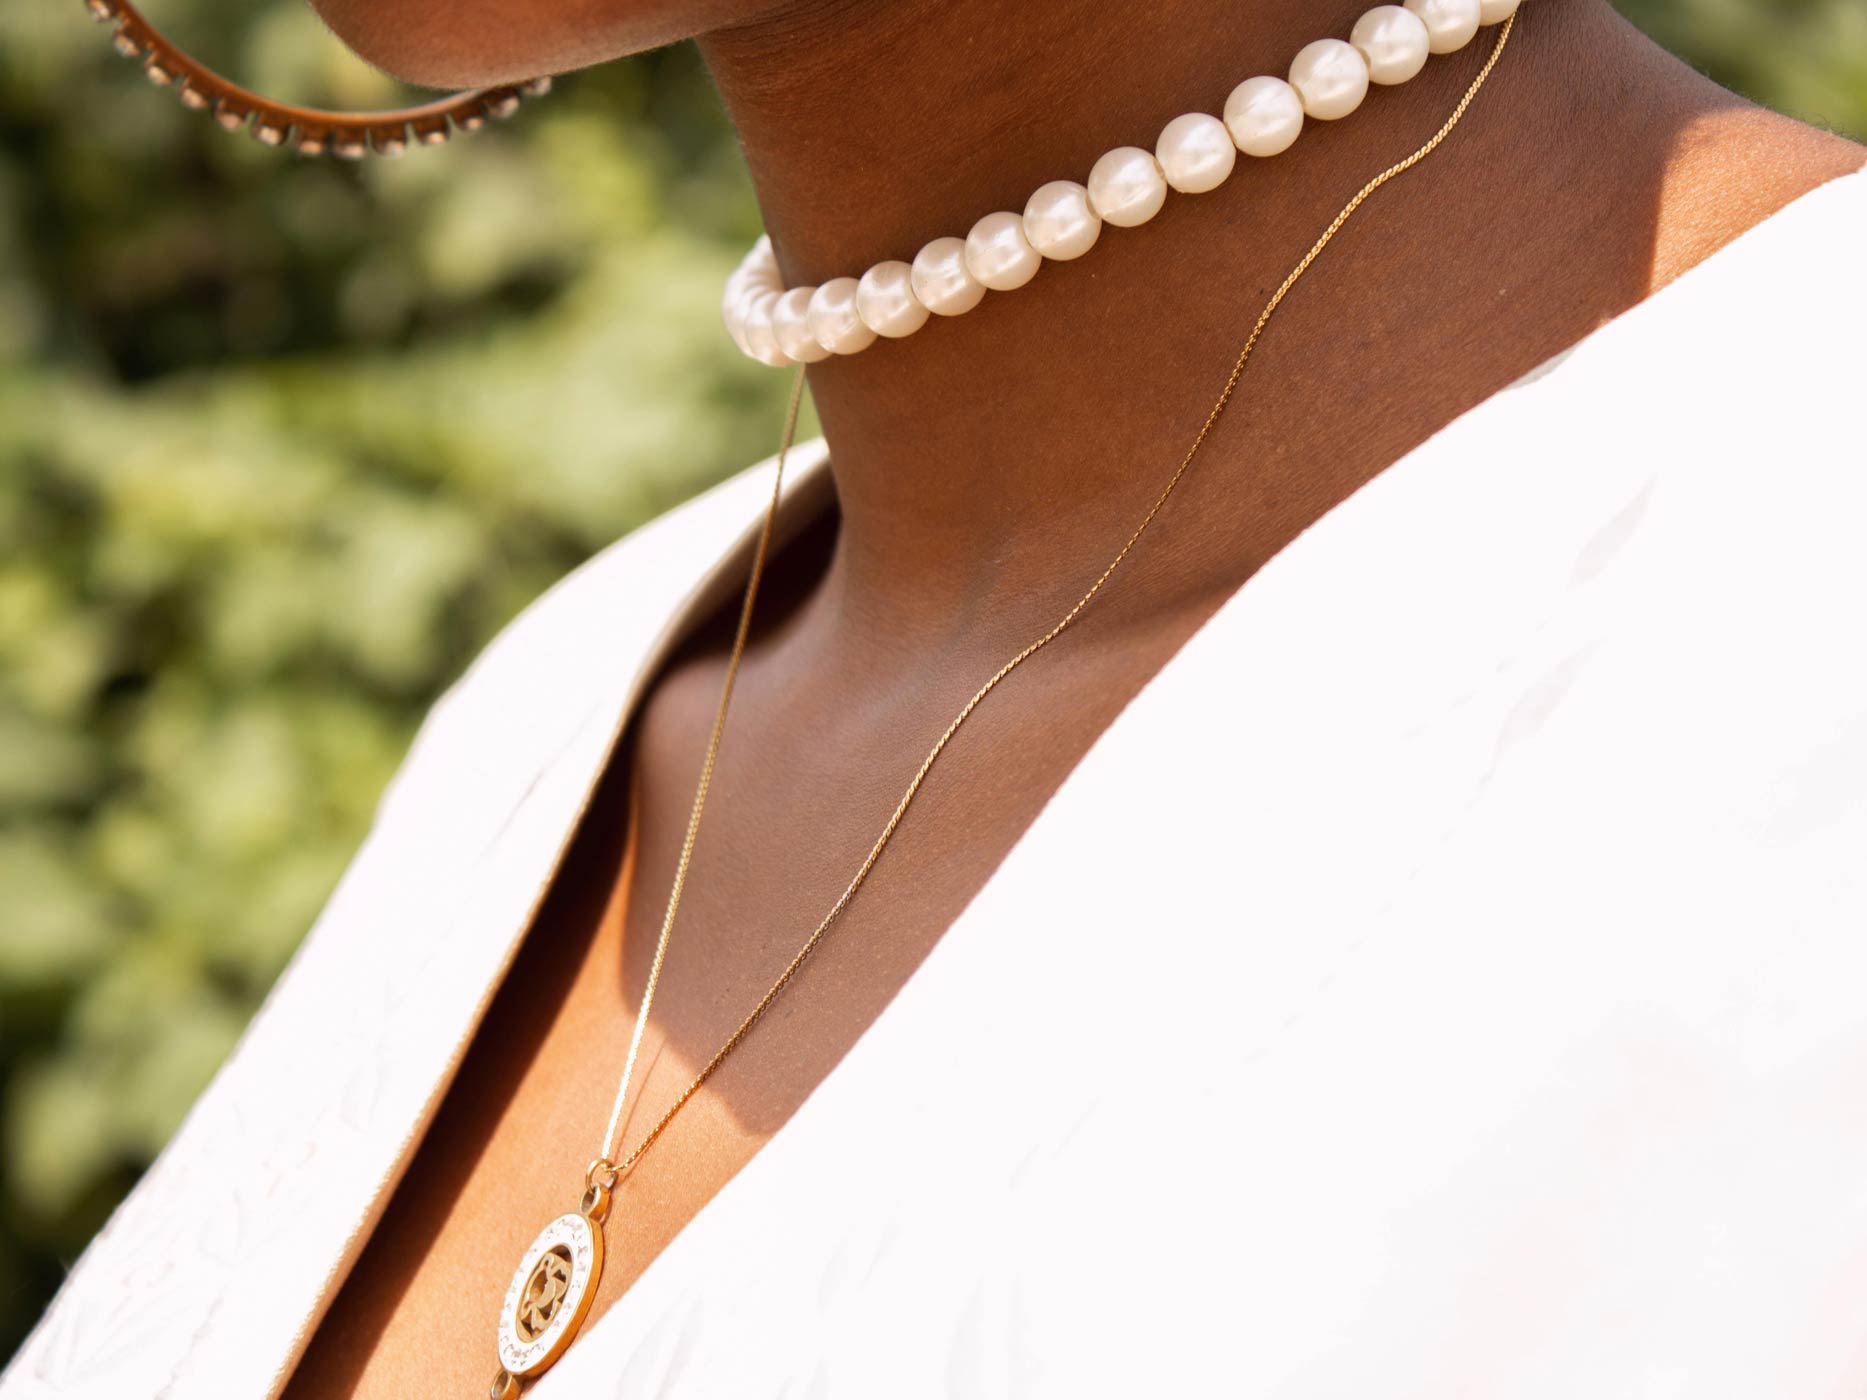 Frau trägt eine Perlenkette und eine längere, goldene Kette um den Hals